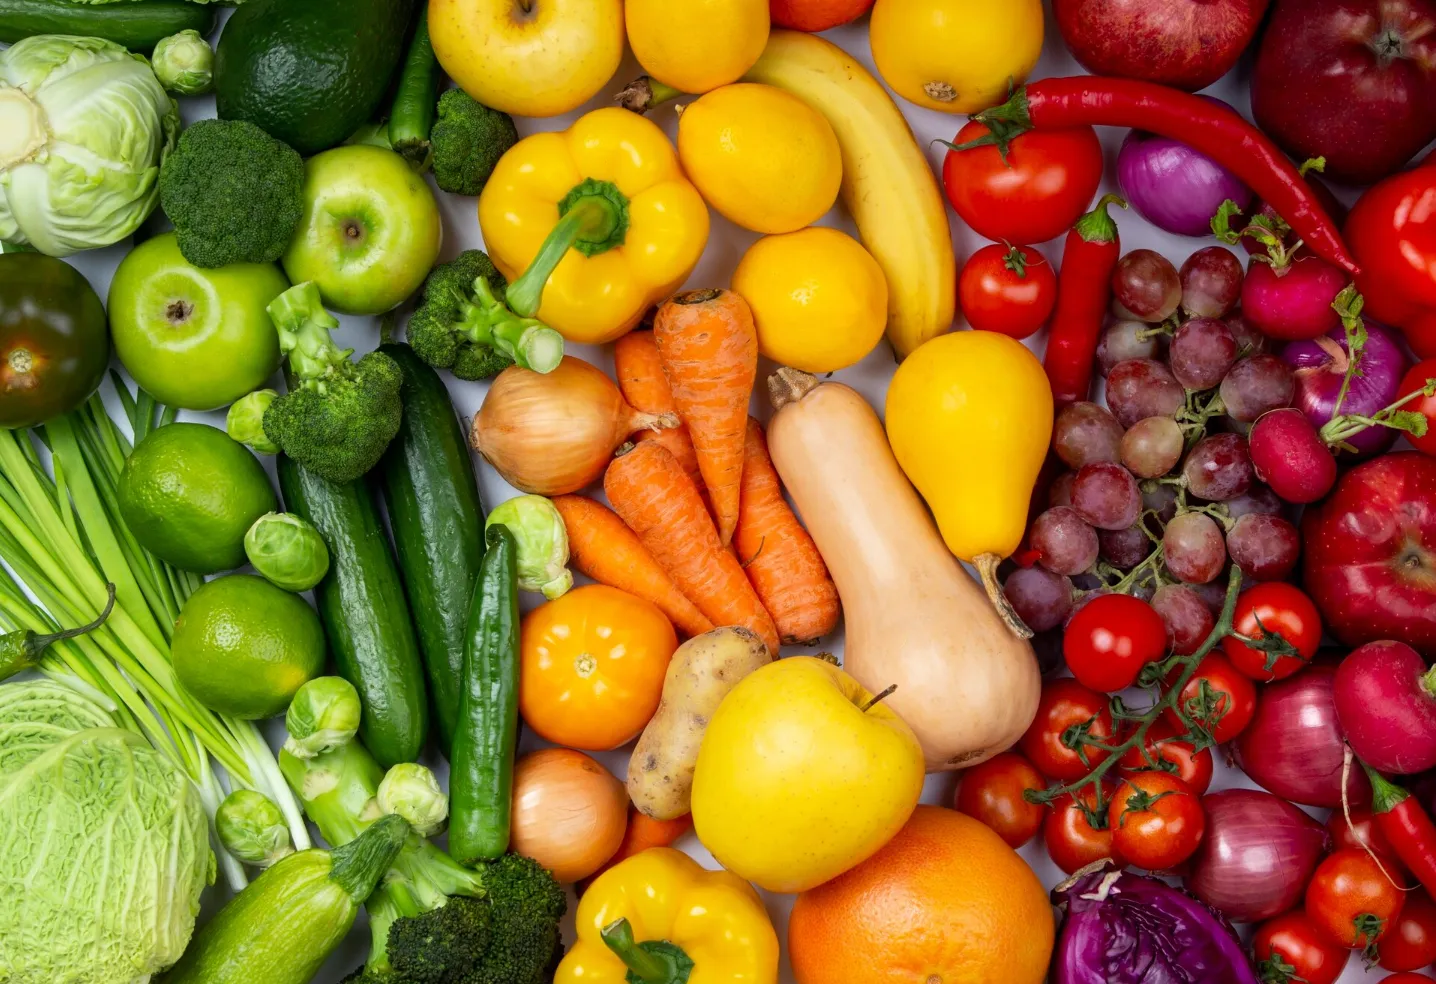 Жёлтые  для кожи, зелёные  от токсинов: Нутрициолог разобрала пользу овощей и фруктов по цветам радуги